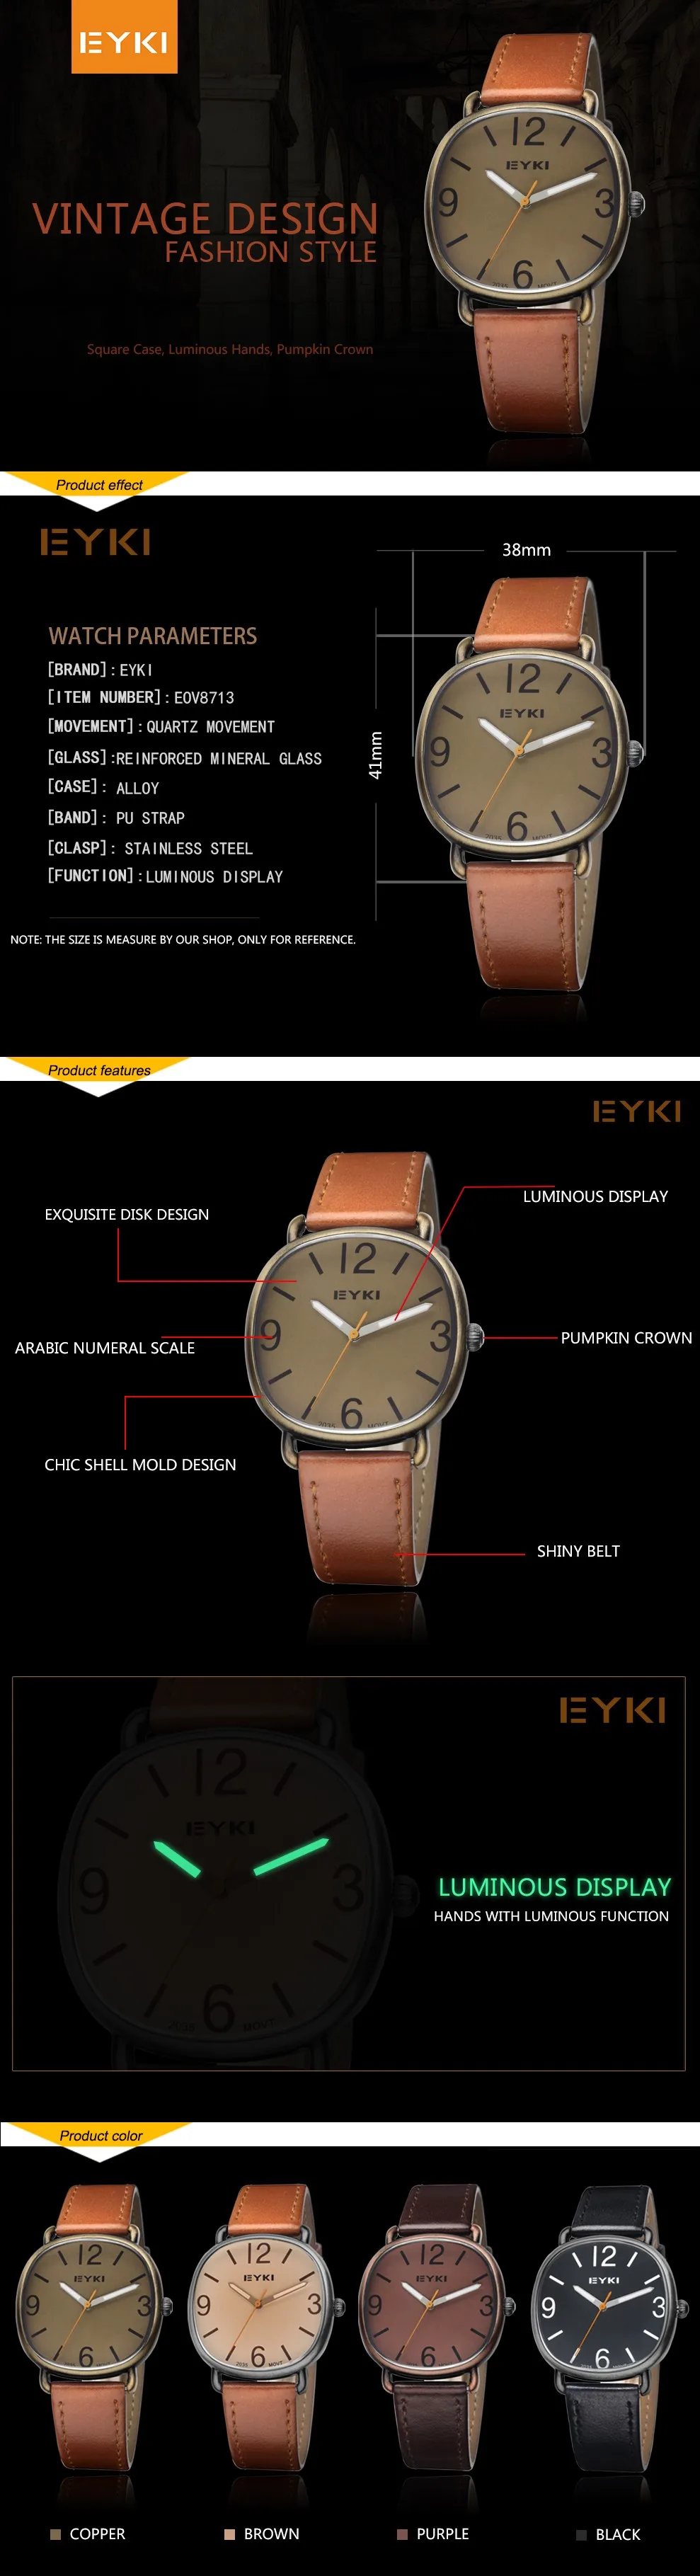 Топ Модный Роскошный бренд ультра тонкие часы из натуральной кожи водонепроницаемые мужские повседневные кварцевые наручные часы Relogio Masculino reloj